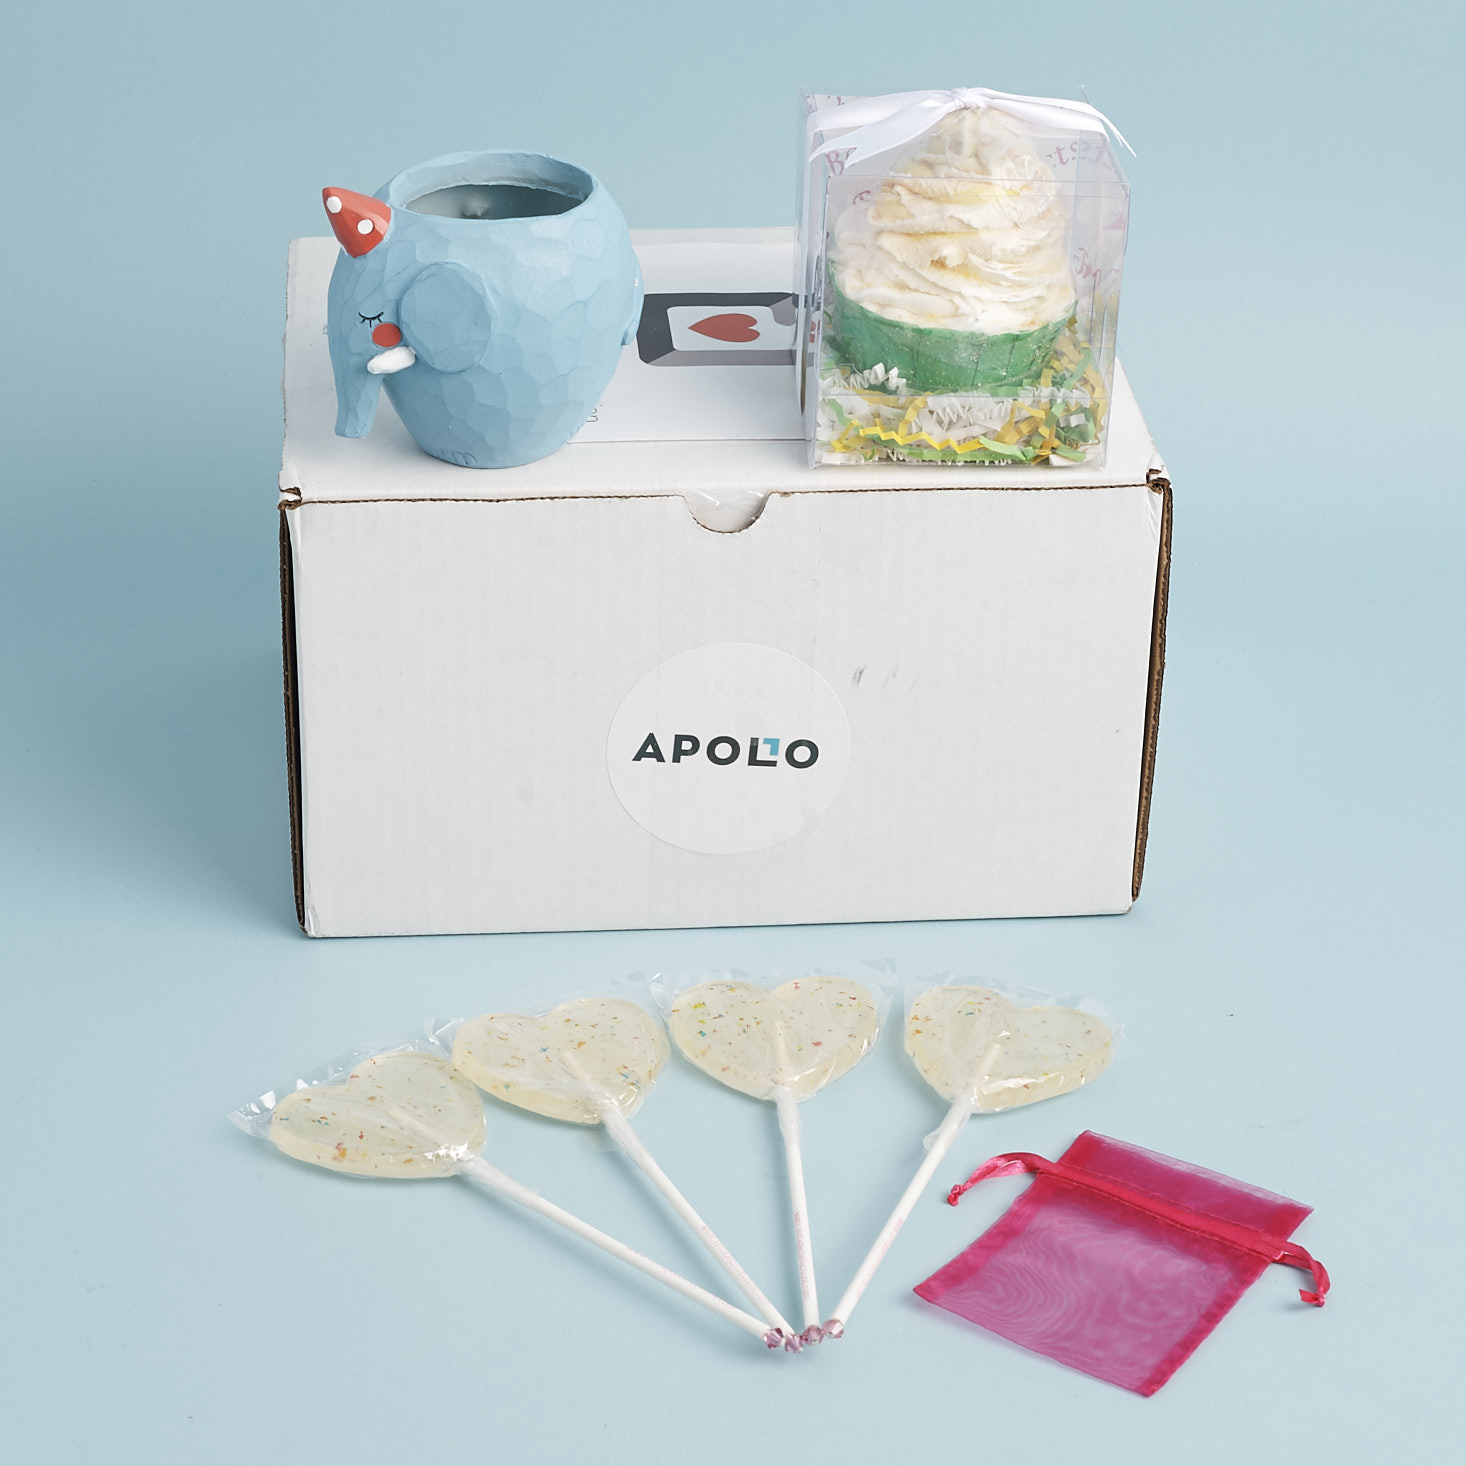 Apollo Surprise Box